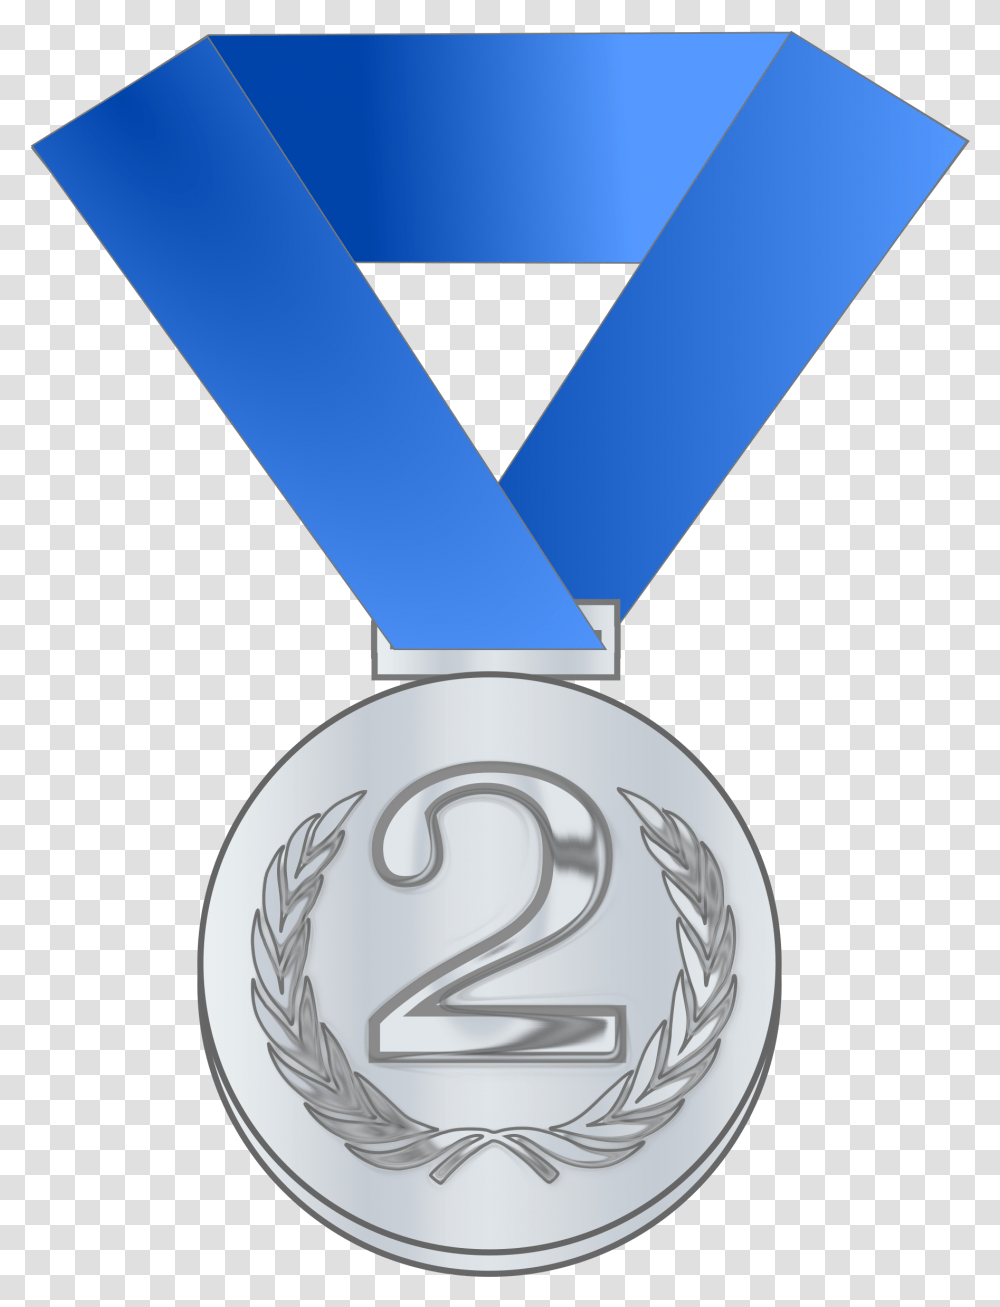 Silver Medal Award Clip Arts Clip Art Silver Medal, Gold, Trophy, Gold Medal Transparent Png